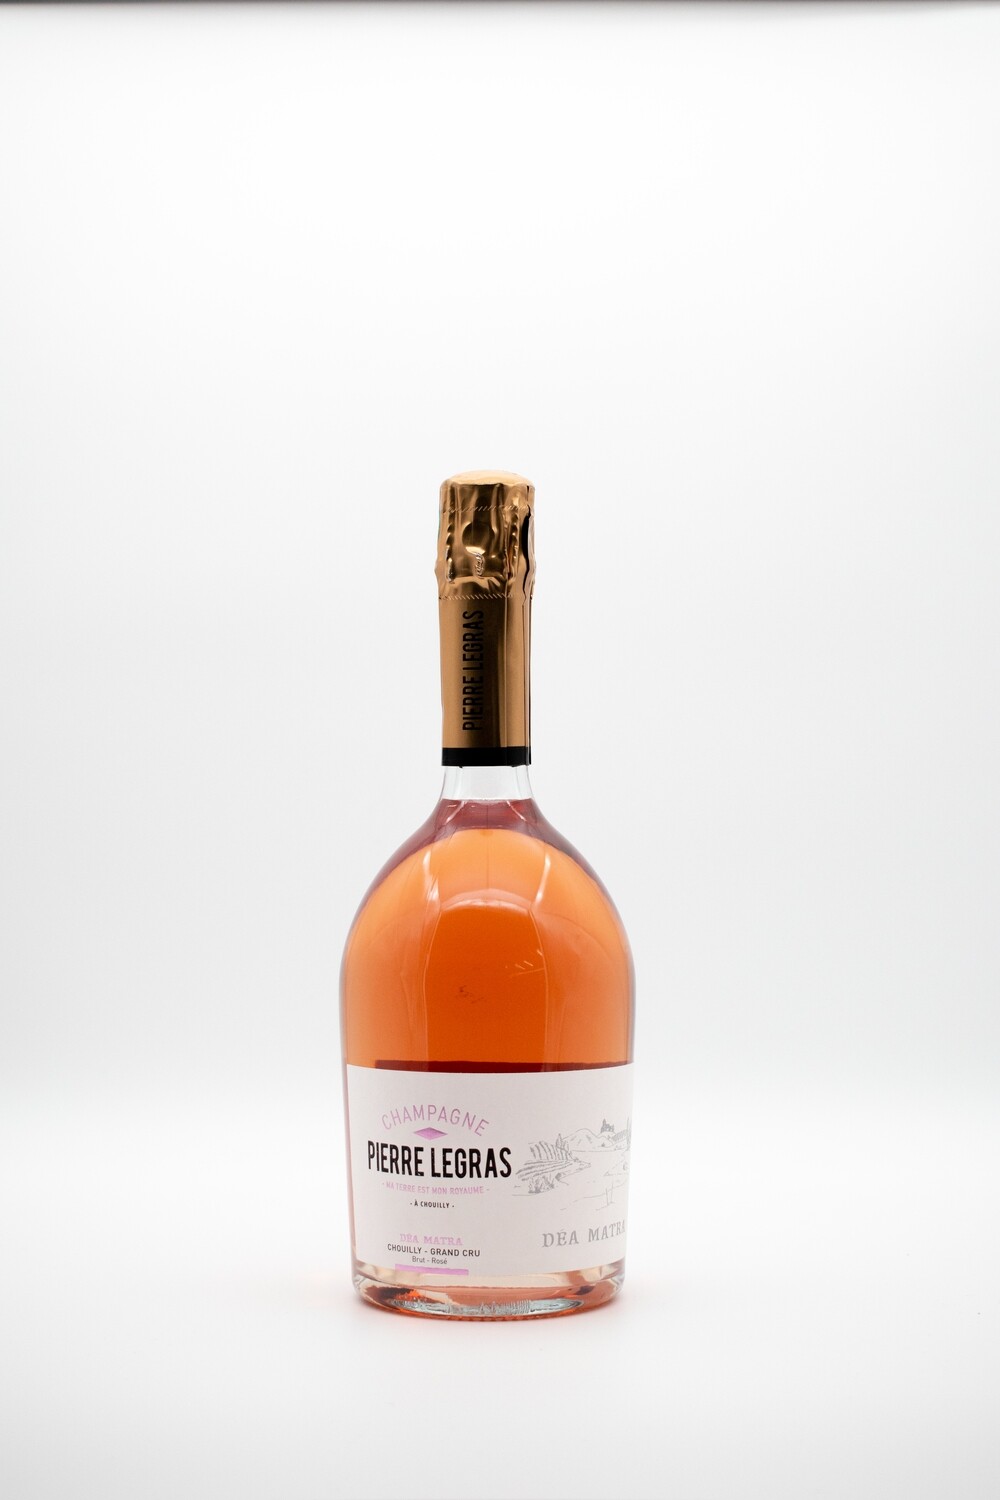 Pierre Legras - Champagne Brut Rosé Chouilly Grand Cru AOC